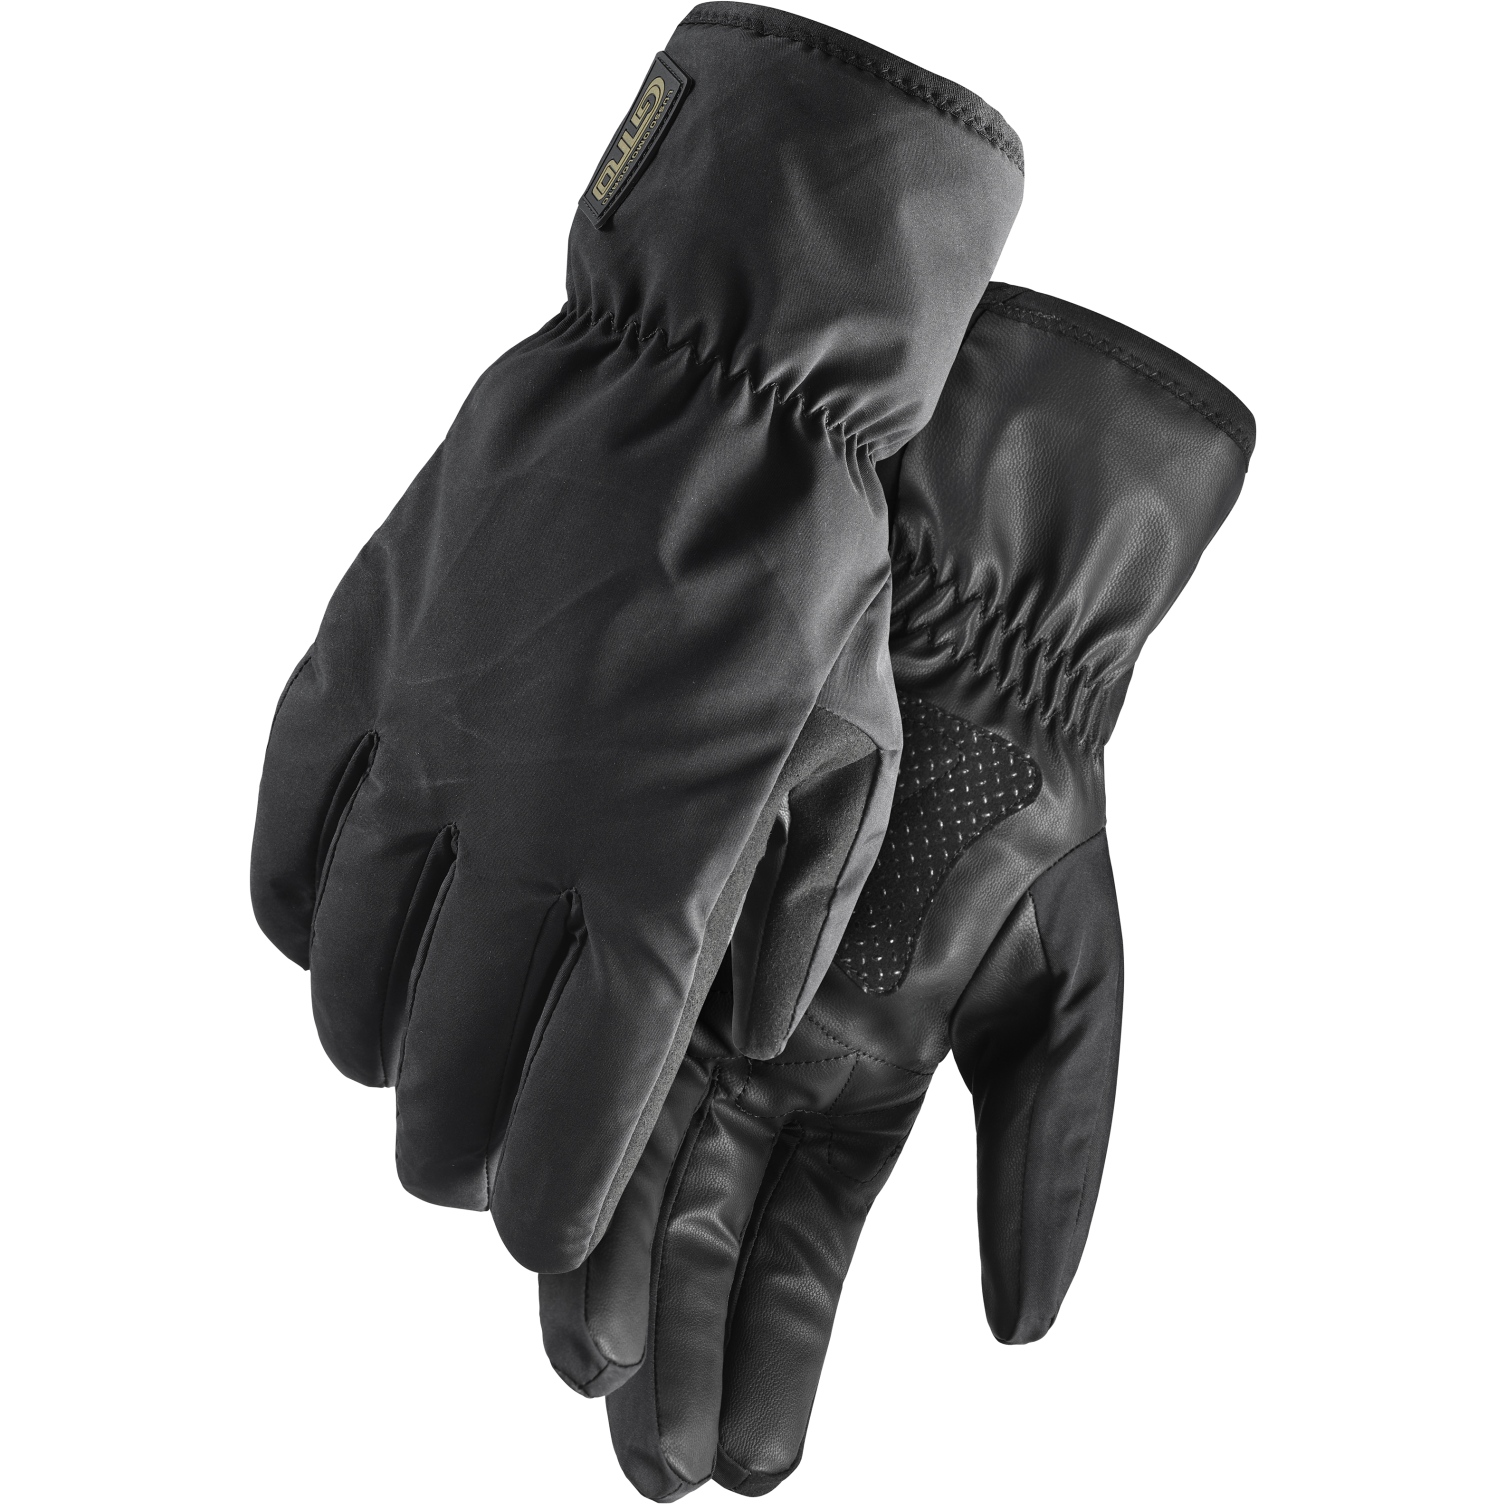 Produktbild von Assos GTO UZ 3/3 Thermo Handschuhe - schwarz series